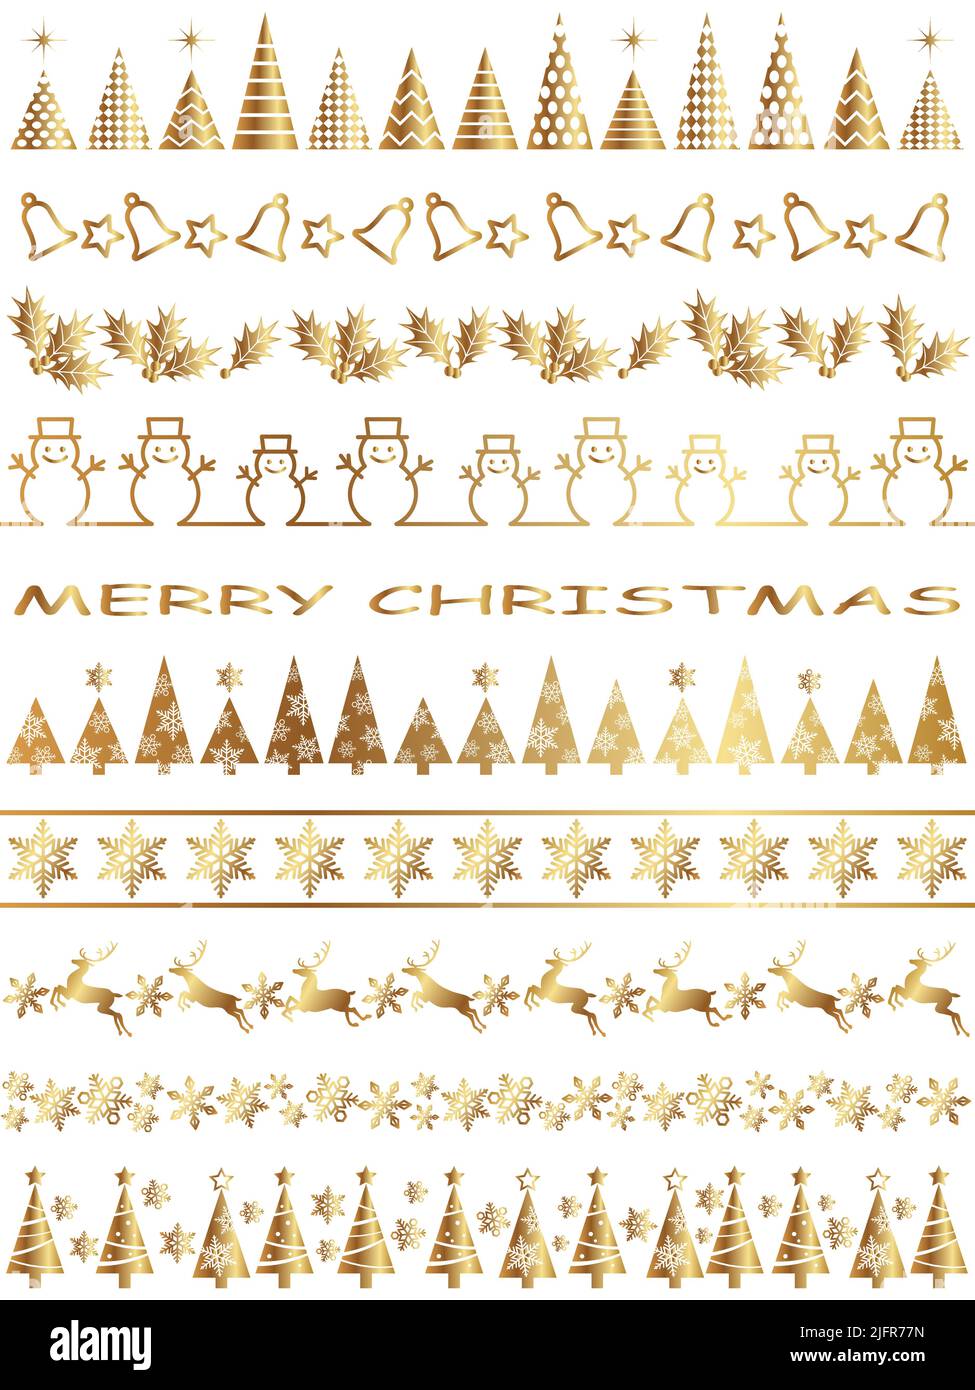 Weihnachts-Vektor-Bordüren-Set bestehend aus verschiedenen Weihnachtselementen isoliert auf Einem weißen Hintergrund. Stock Vektor